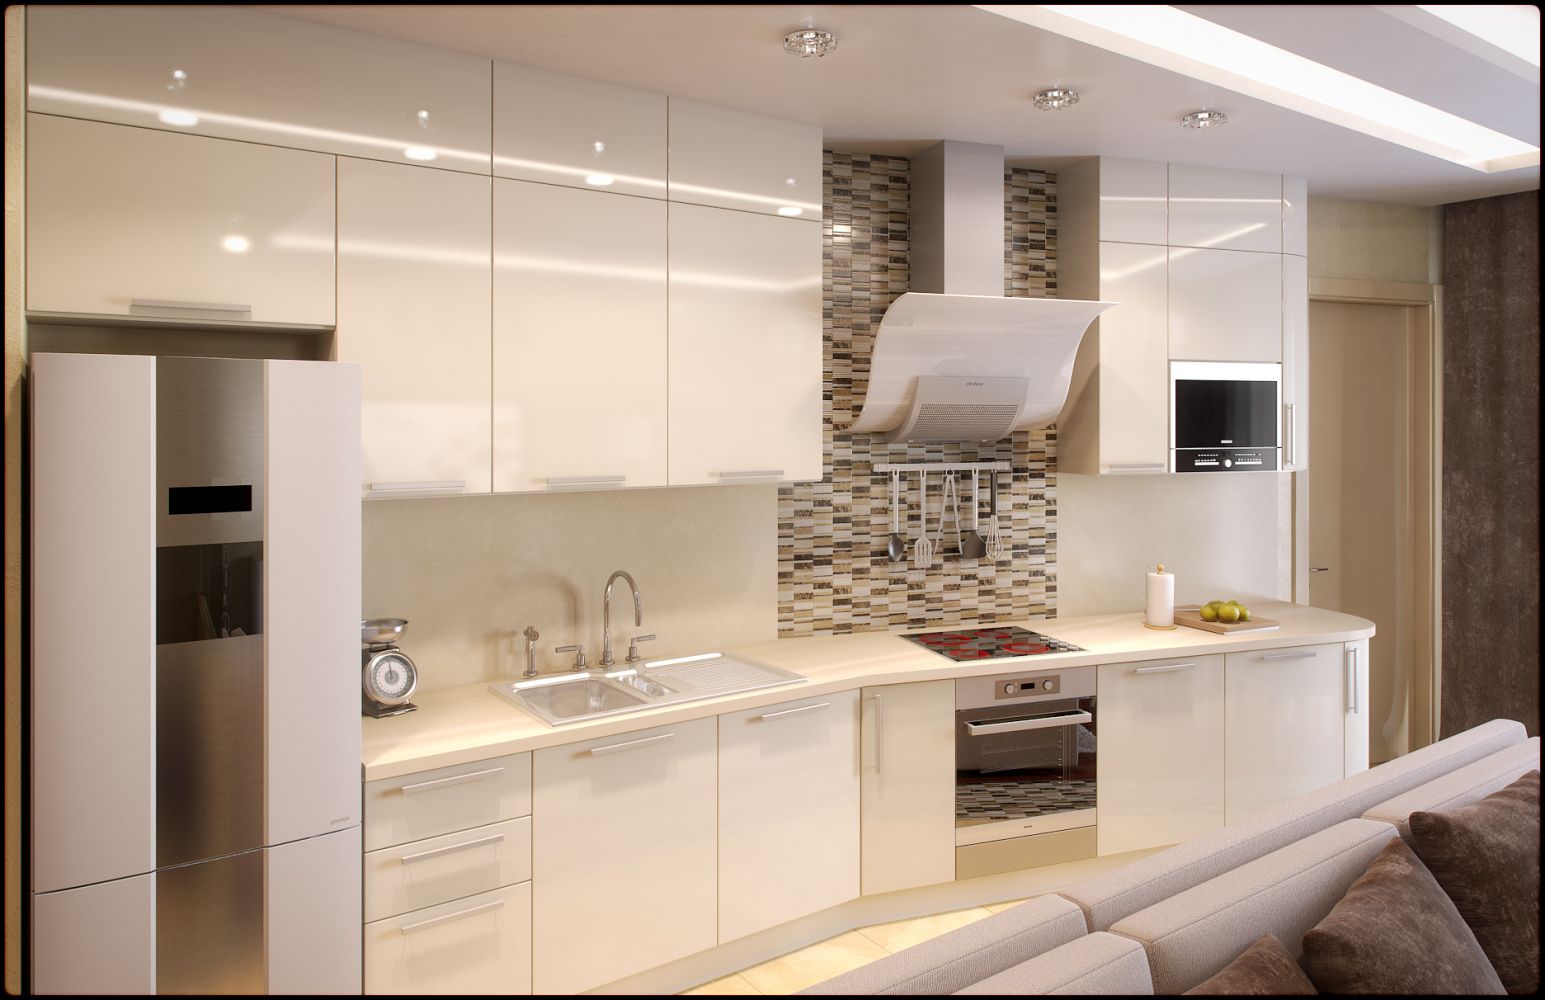 Дизайн кухни в современном стиле в светлых тонах: угловая, с фартуком из плитки, с барными стойками, 8 кв.м, 10 кв.м, 12 кв.м, 16 кв.м